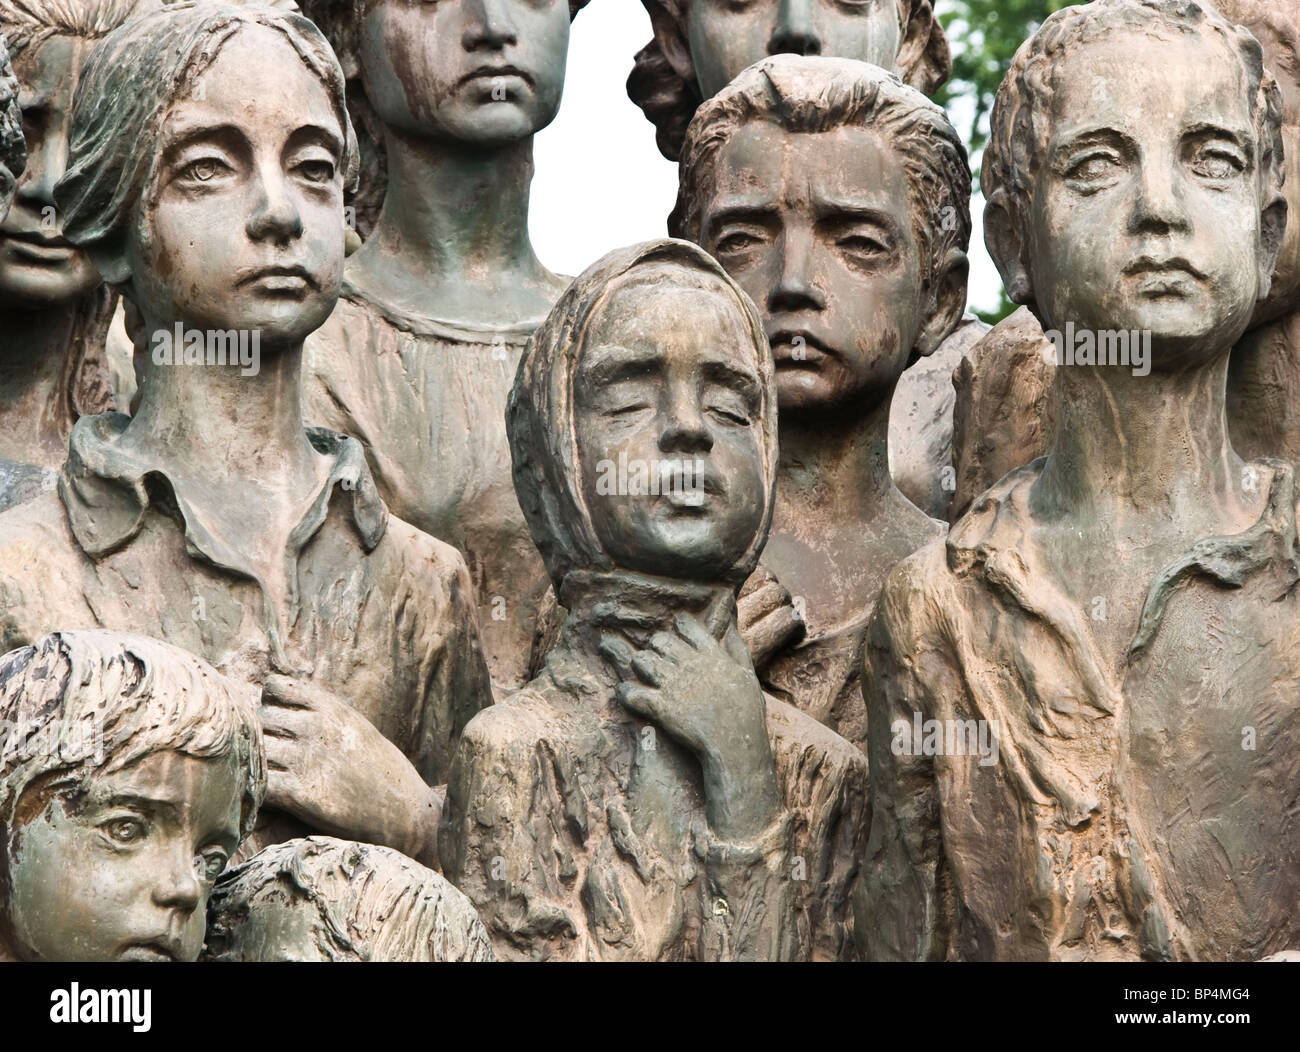 Détail de statues de bronze de 82 enfants massacrés dans la seconde guerre mondiale à Lidice, près de Prague, République Tchèque Europe Banque D'Images